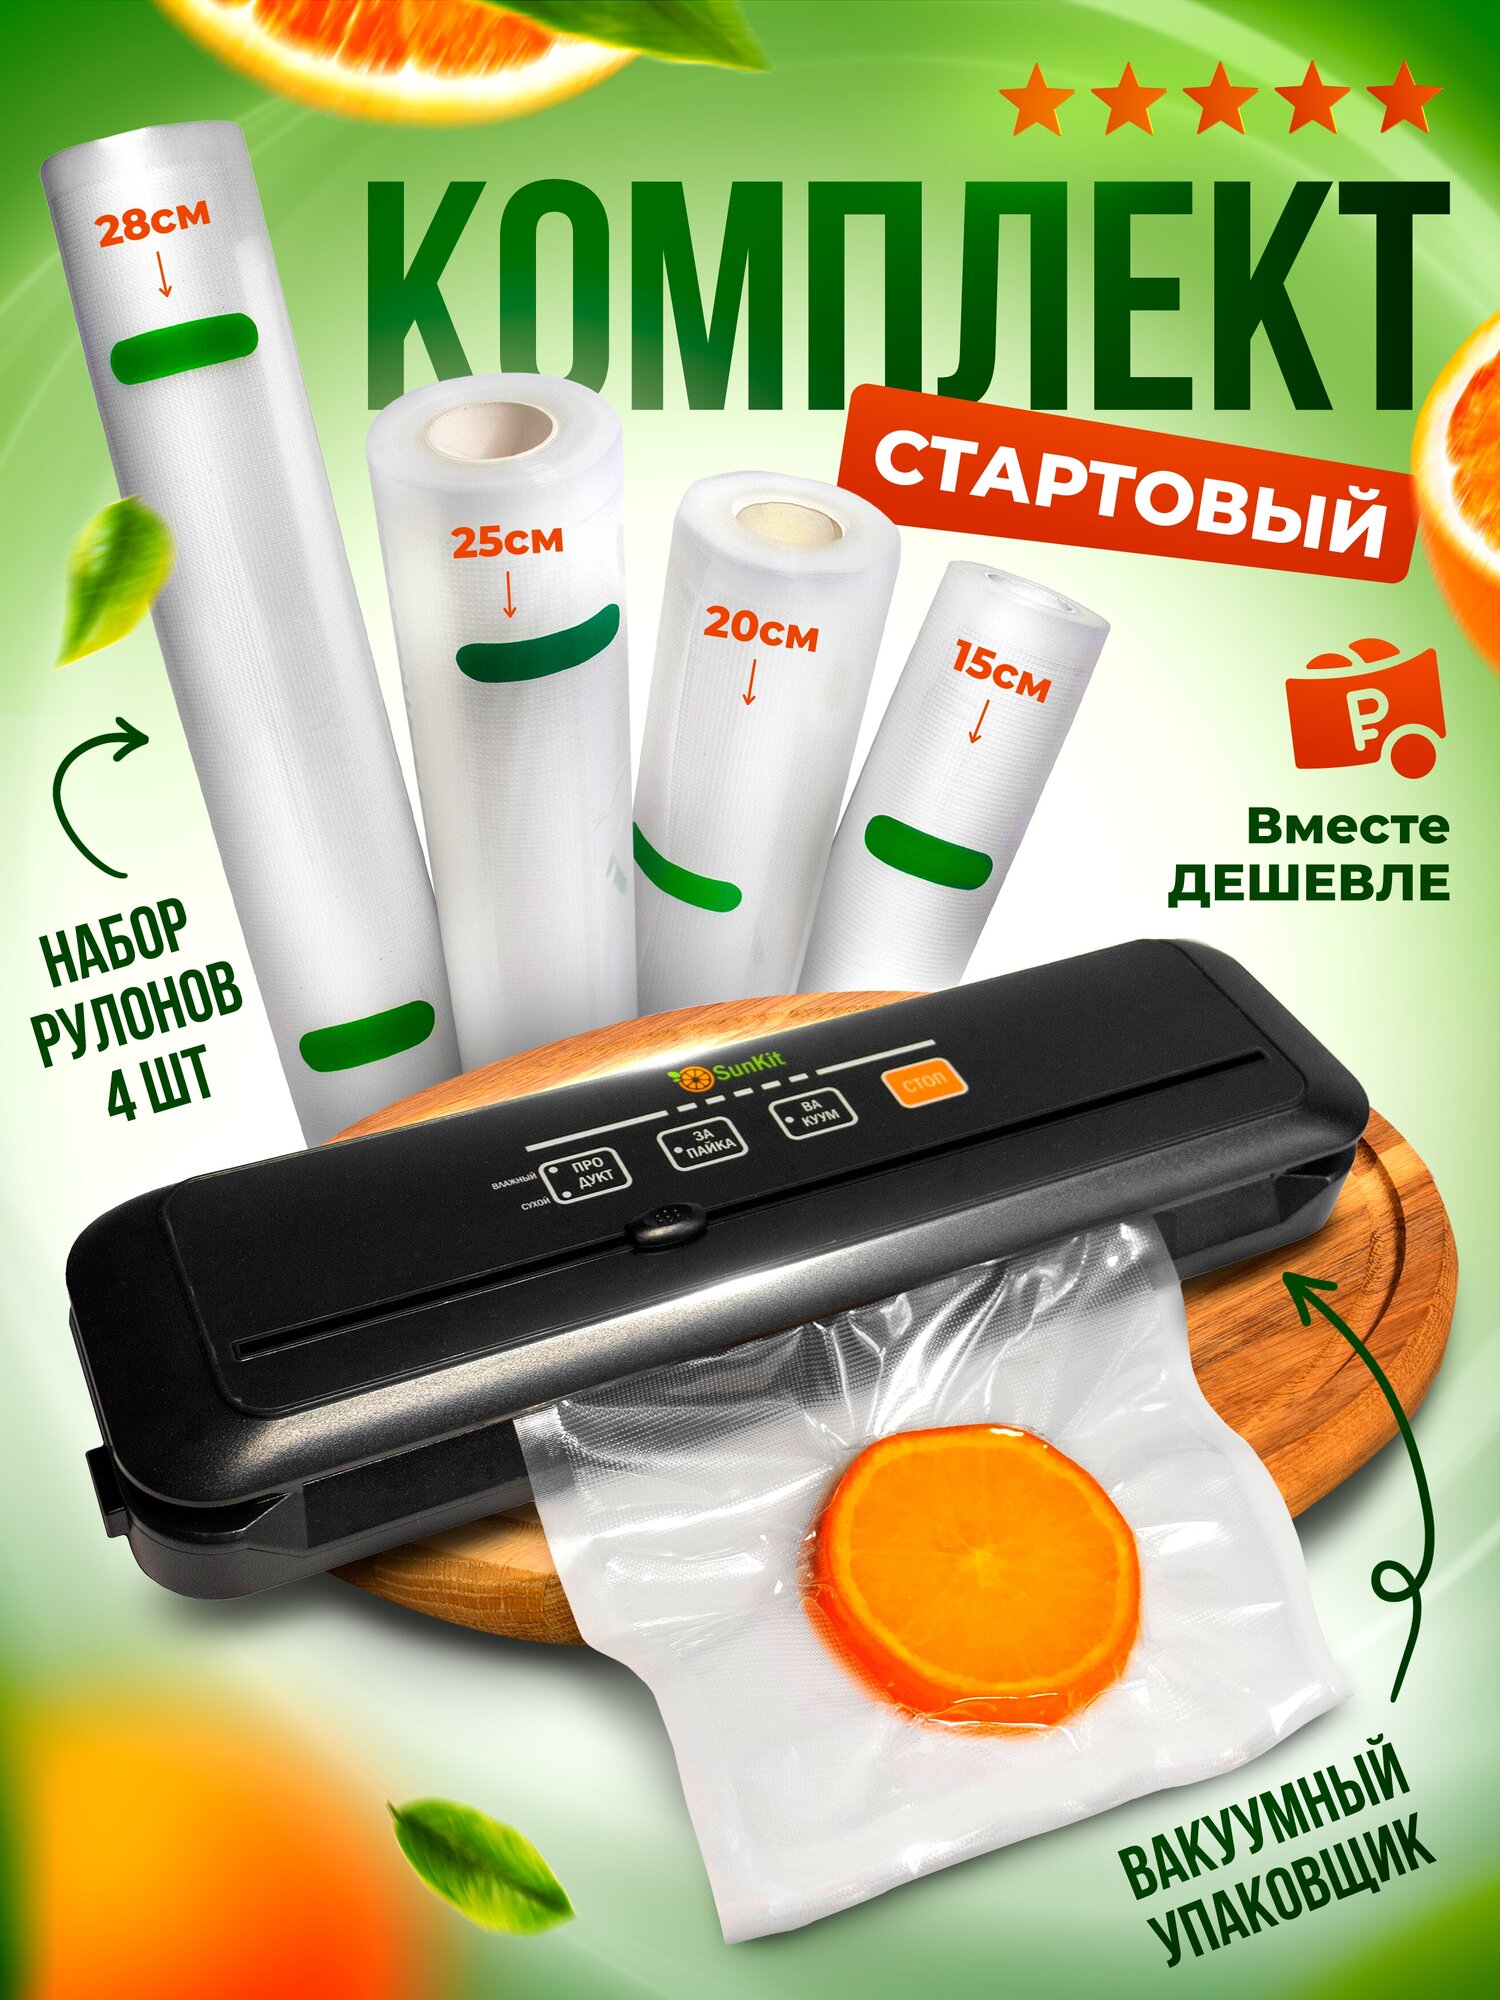 Вакуумный упаковщик для продуктов+ набор из 4-х рулонов SunKit - Выгодный комплект!